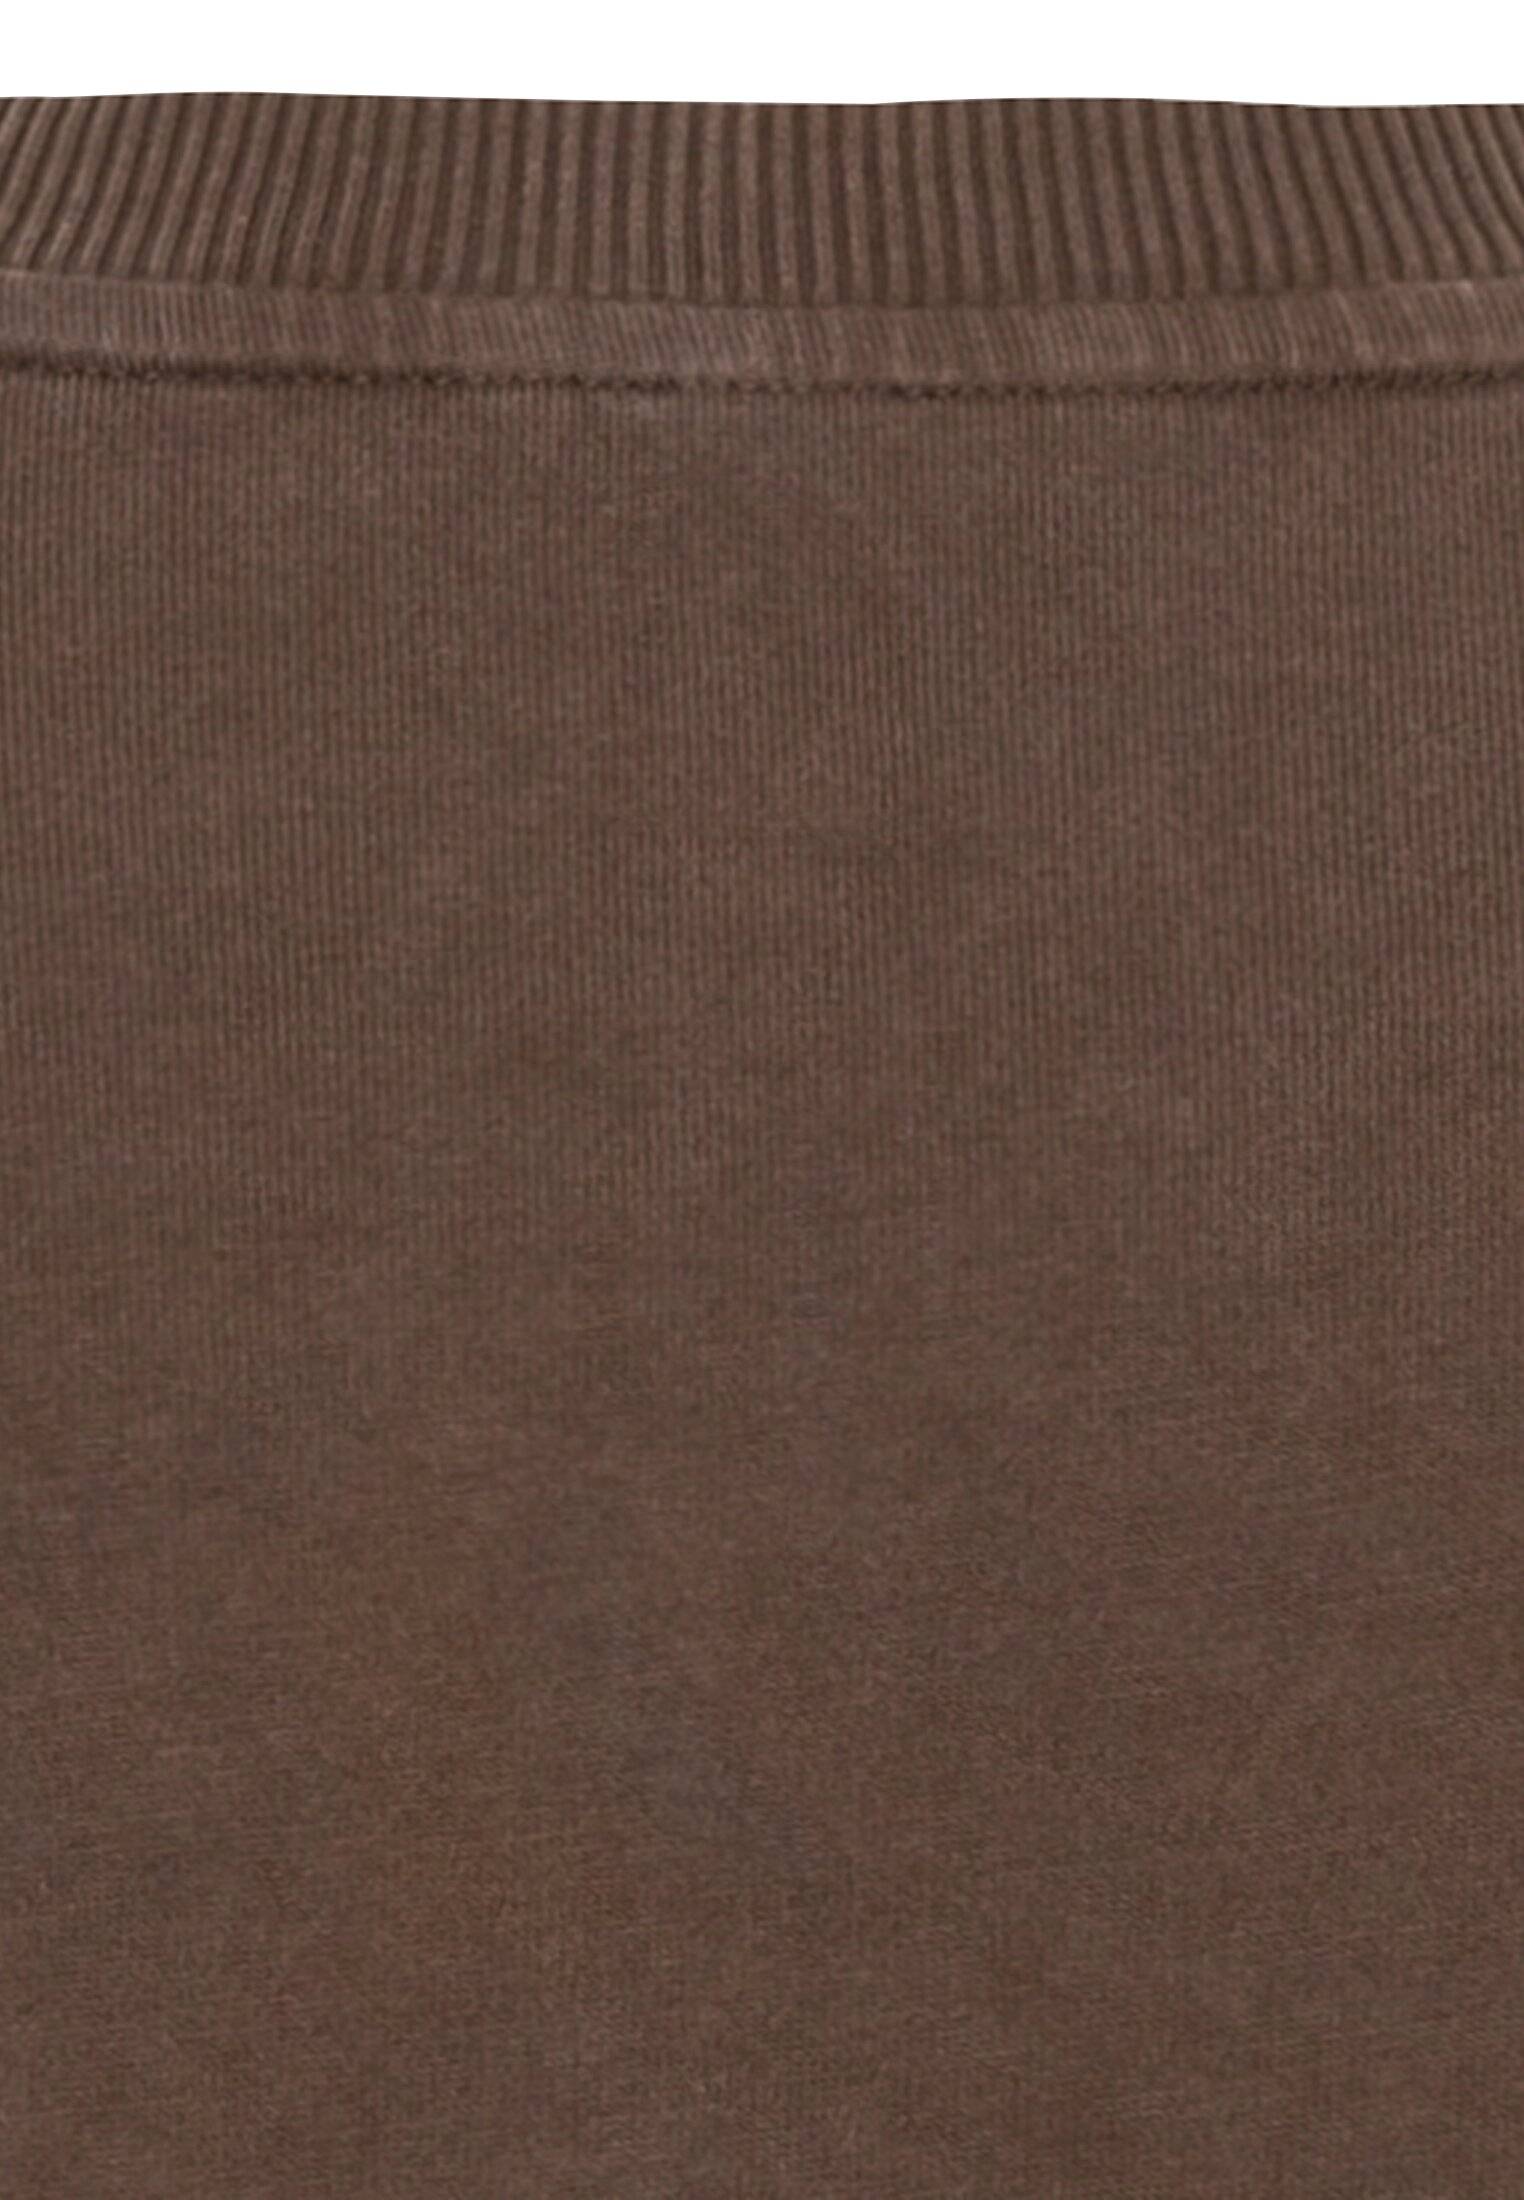 Мужская футболка Camel Active, коричневая, цвет коричневый, размер 56 - фото 4